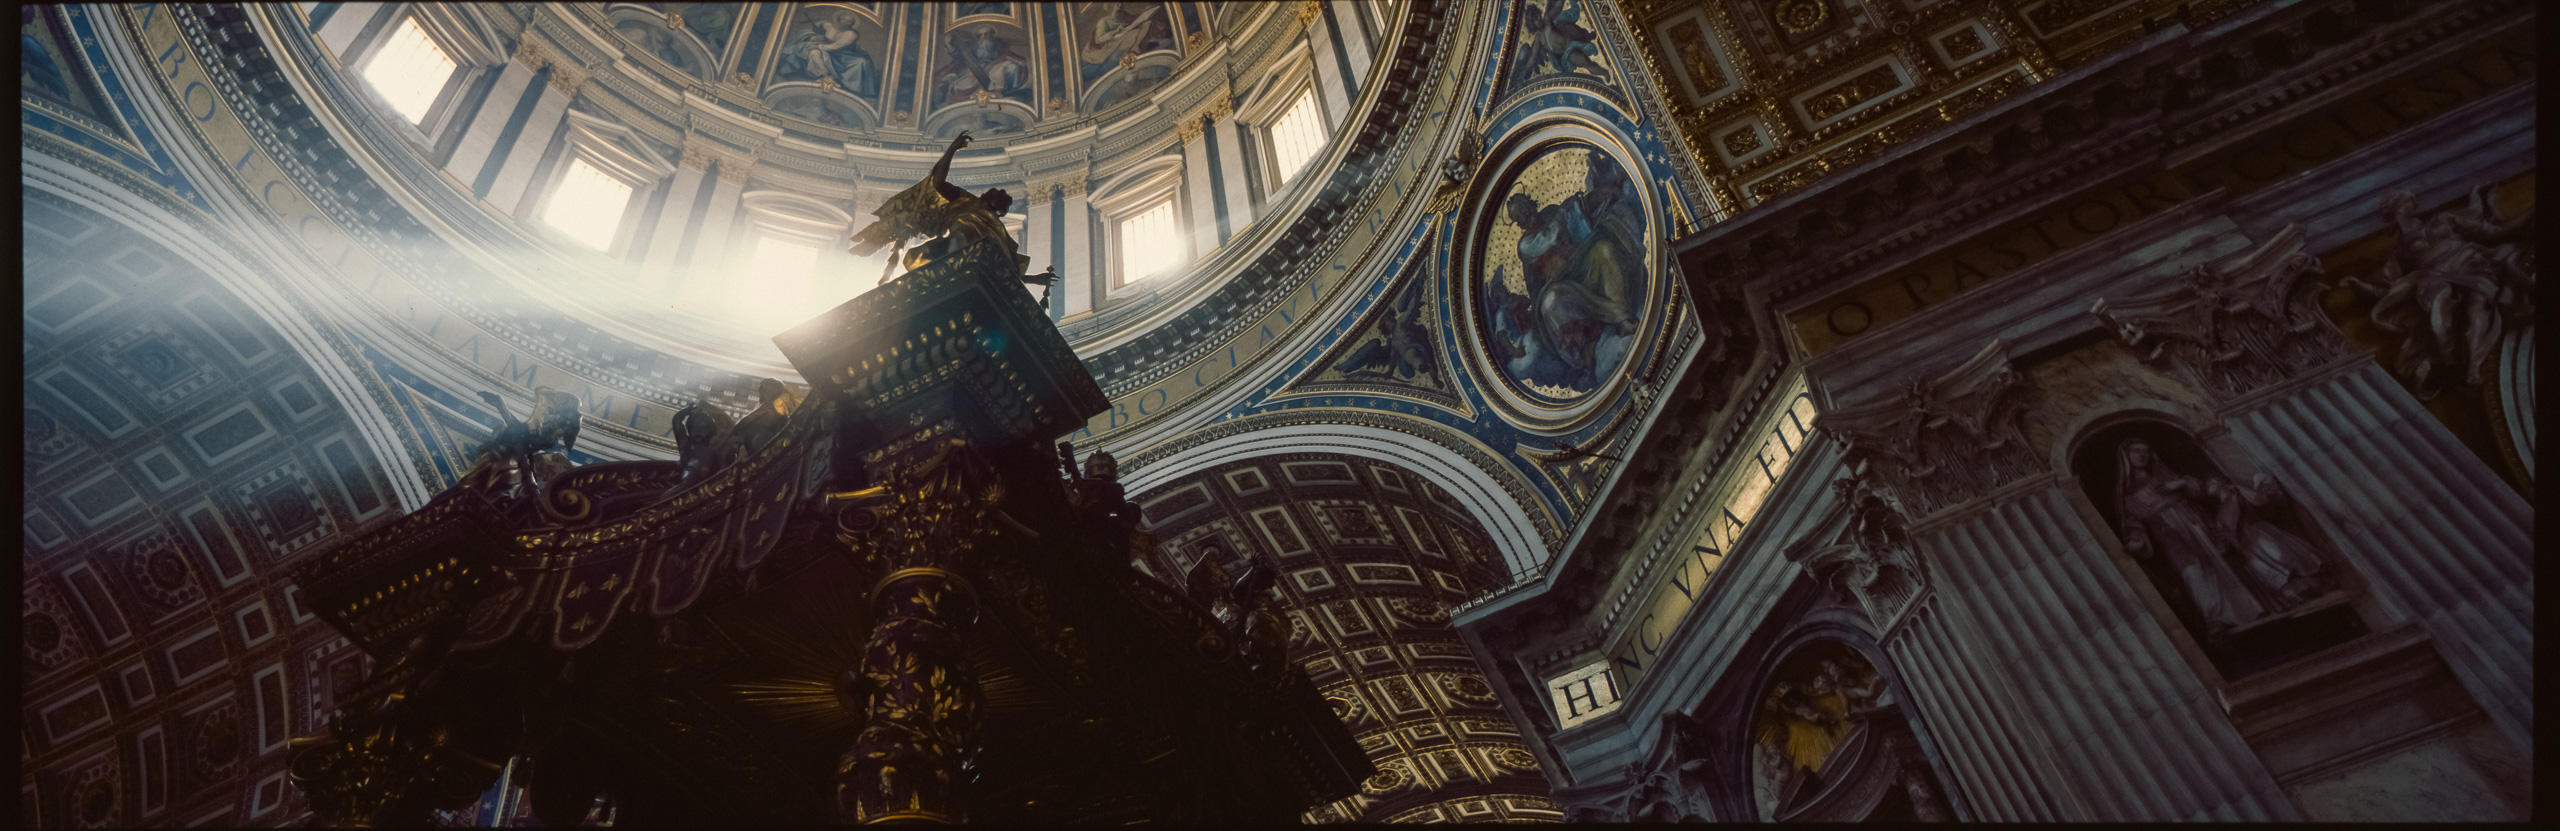 Angel below the Vatican Dome